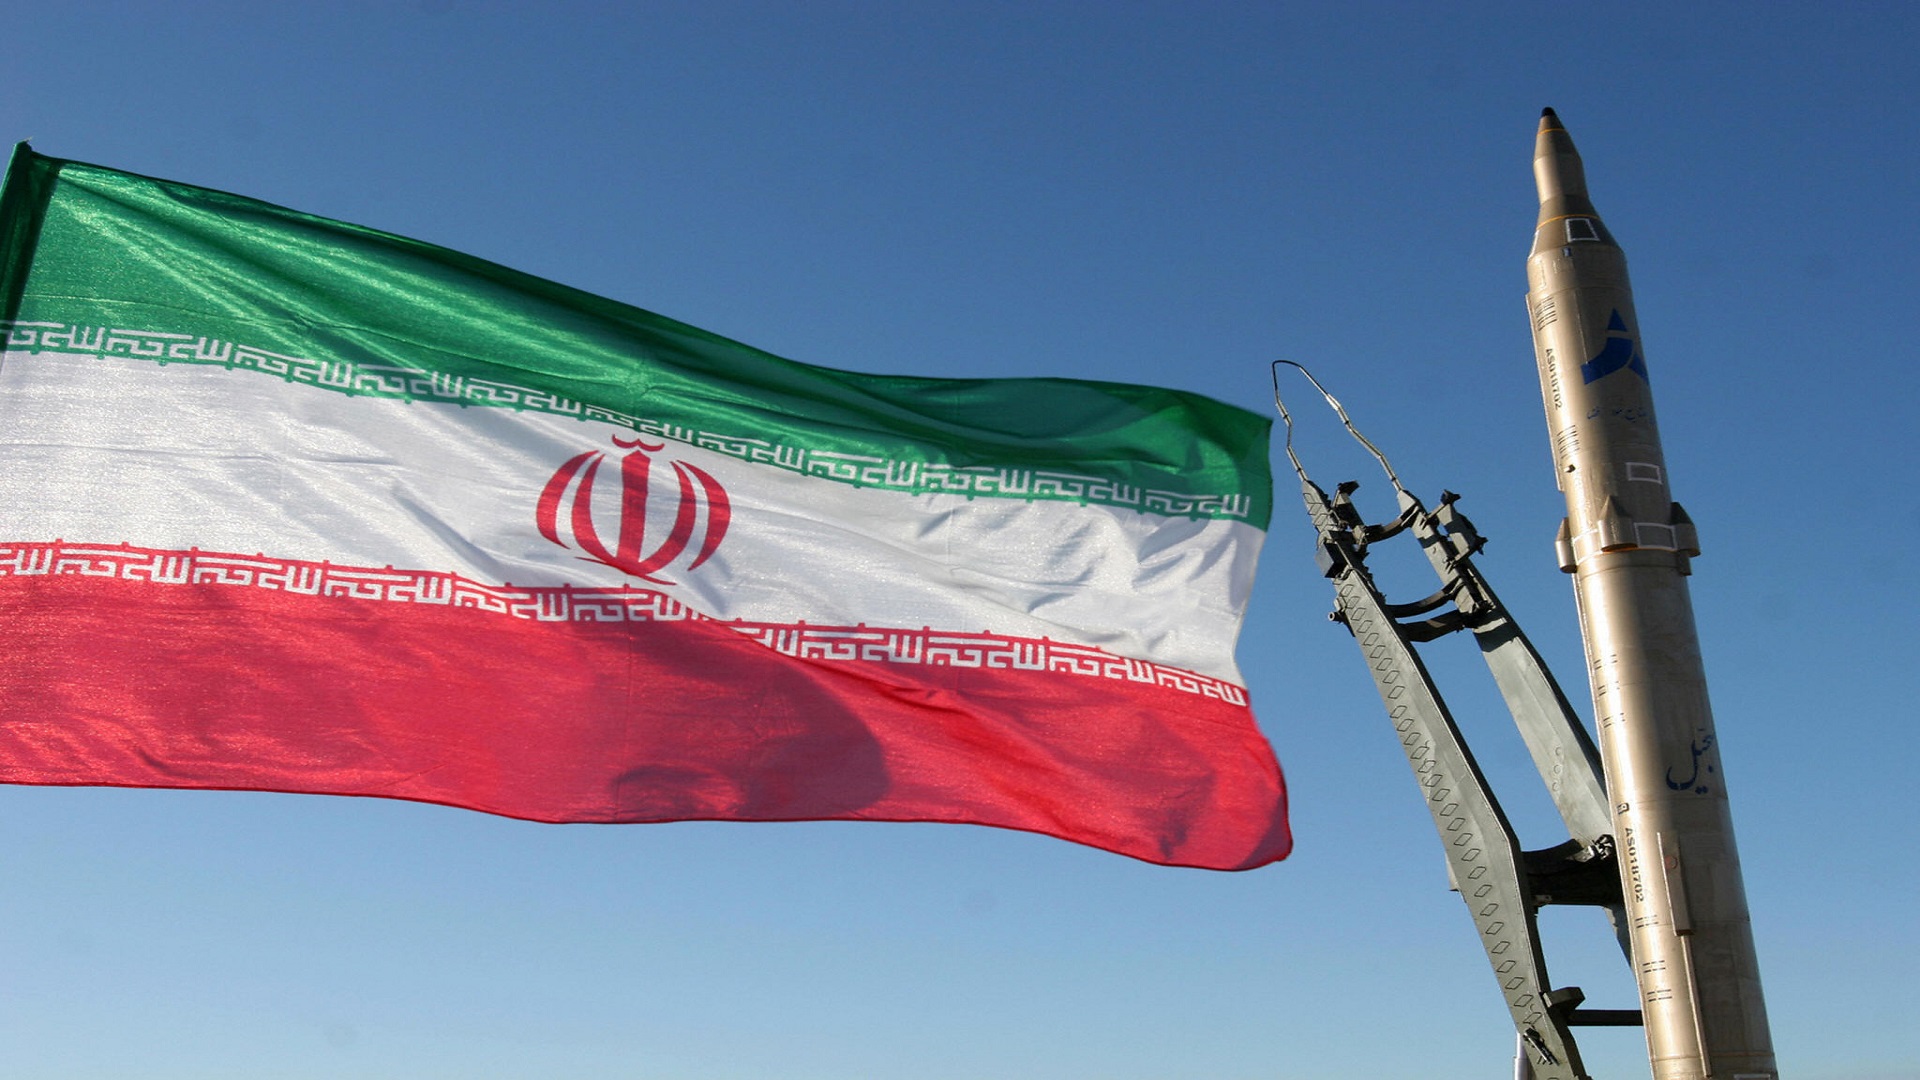 Ιράν: Έτοιμο να αναπτύξει πυρηνικά όπλα και να προχωρήσει σε εμπλουτισμό ουρανίου